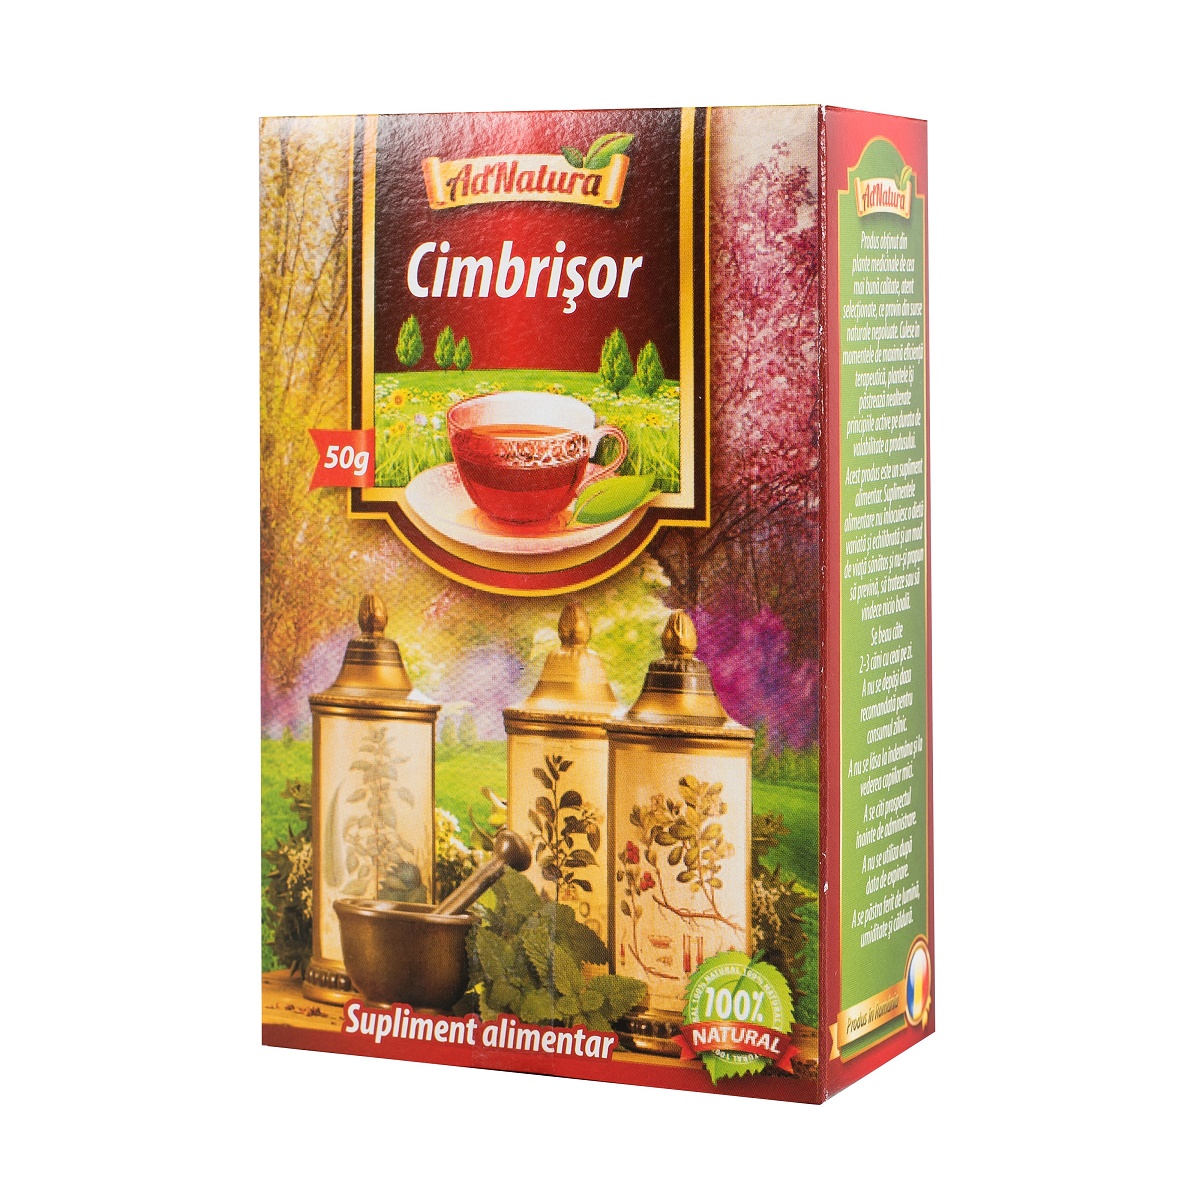 Ceai de Cimbrisor, 50 g - AdNatura